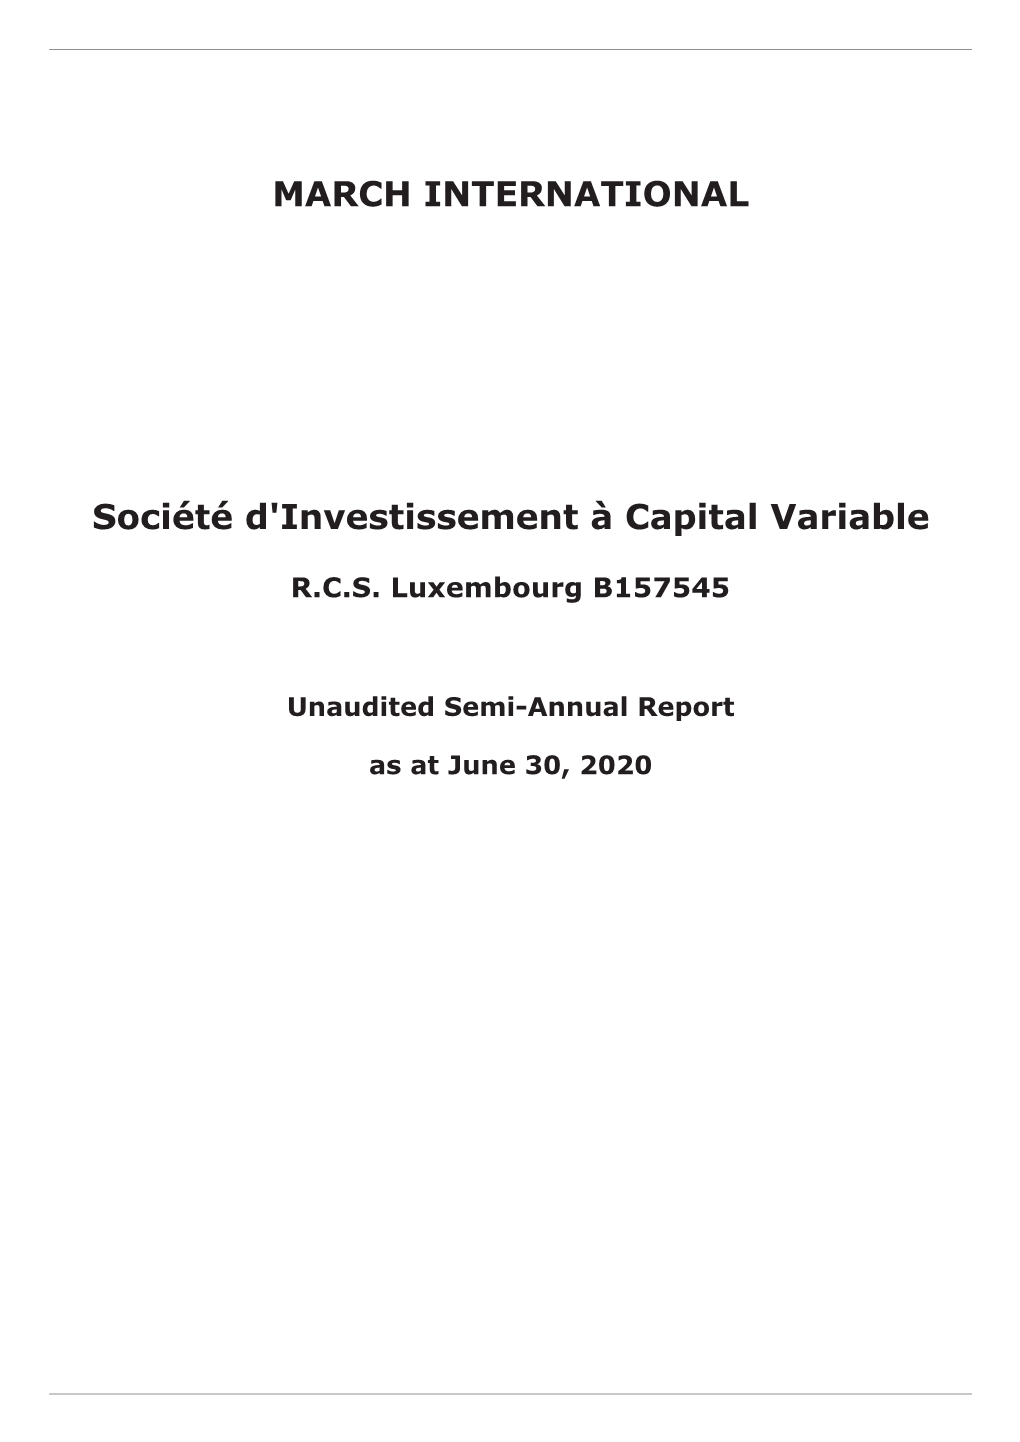 MARCH INTERNATIONAL Société D'investissement À Capital Variable